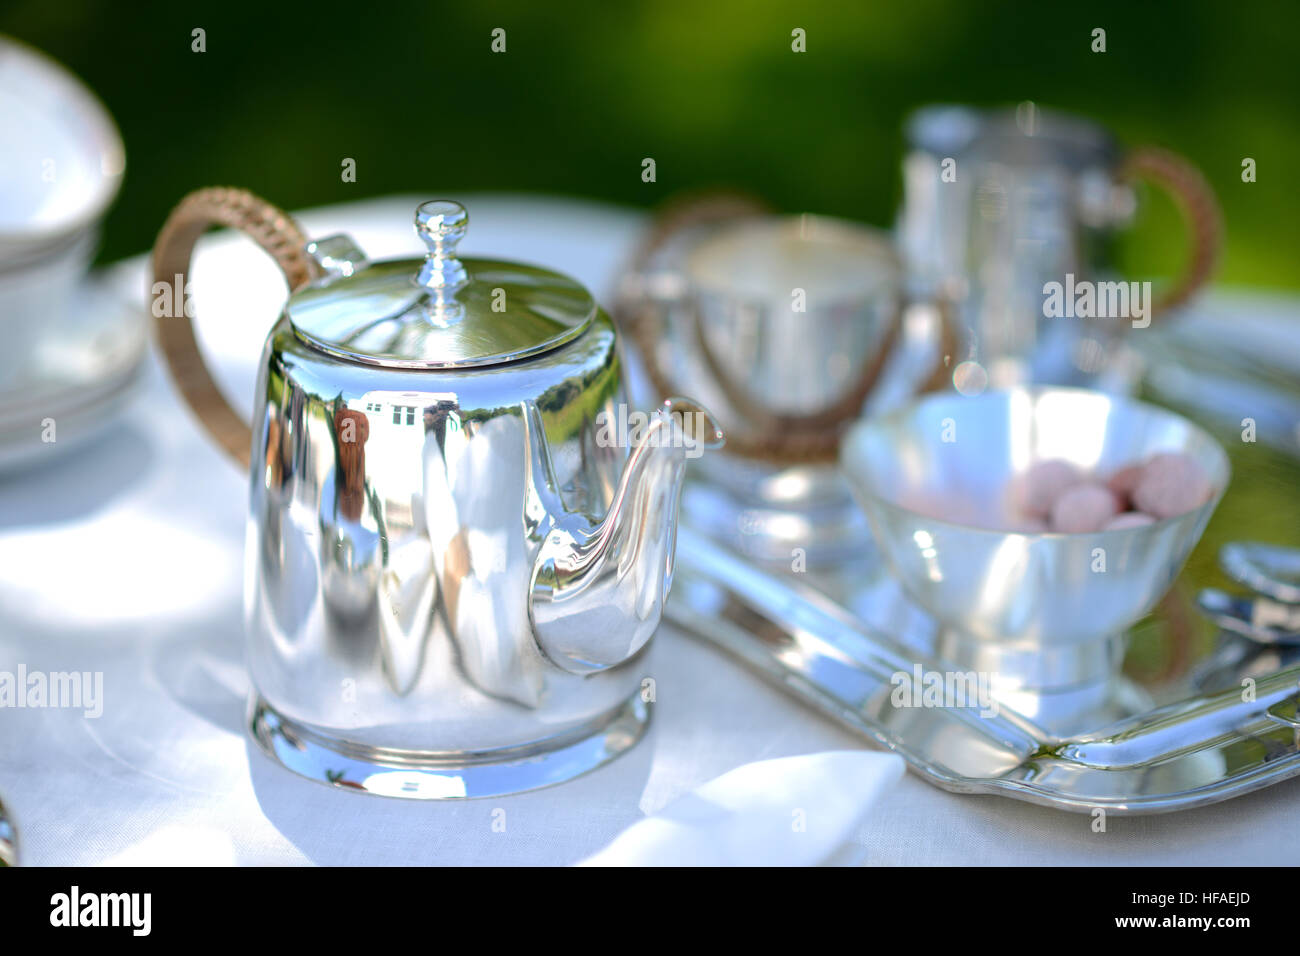 Tisch für einen englischen High Tea oder Tee am Nachmittag, außerhalb mit silberne Teekanne und Leinen Tischdecke Stockfoto